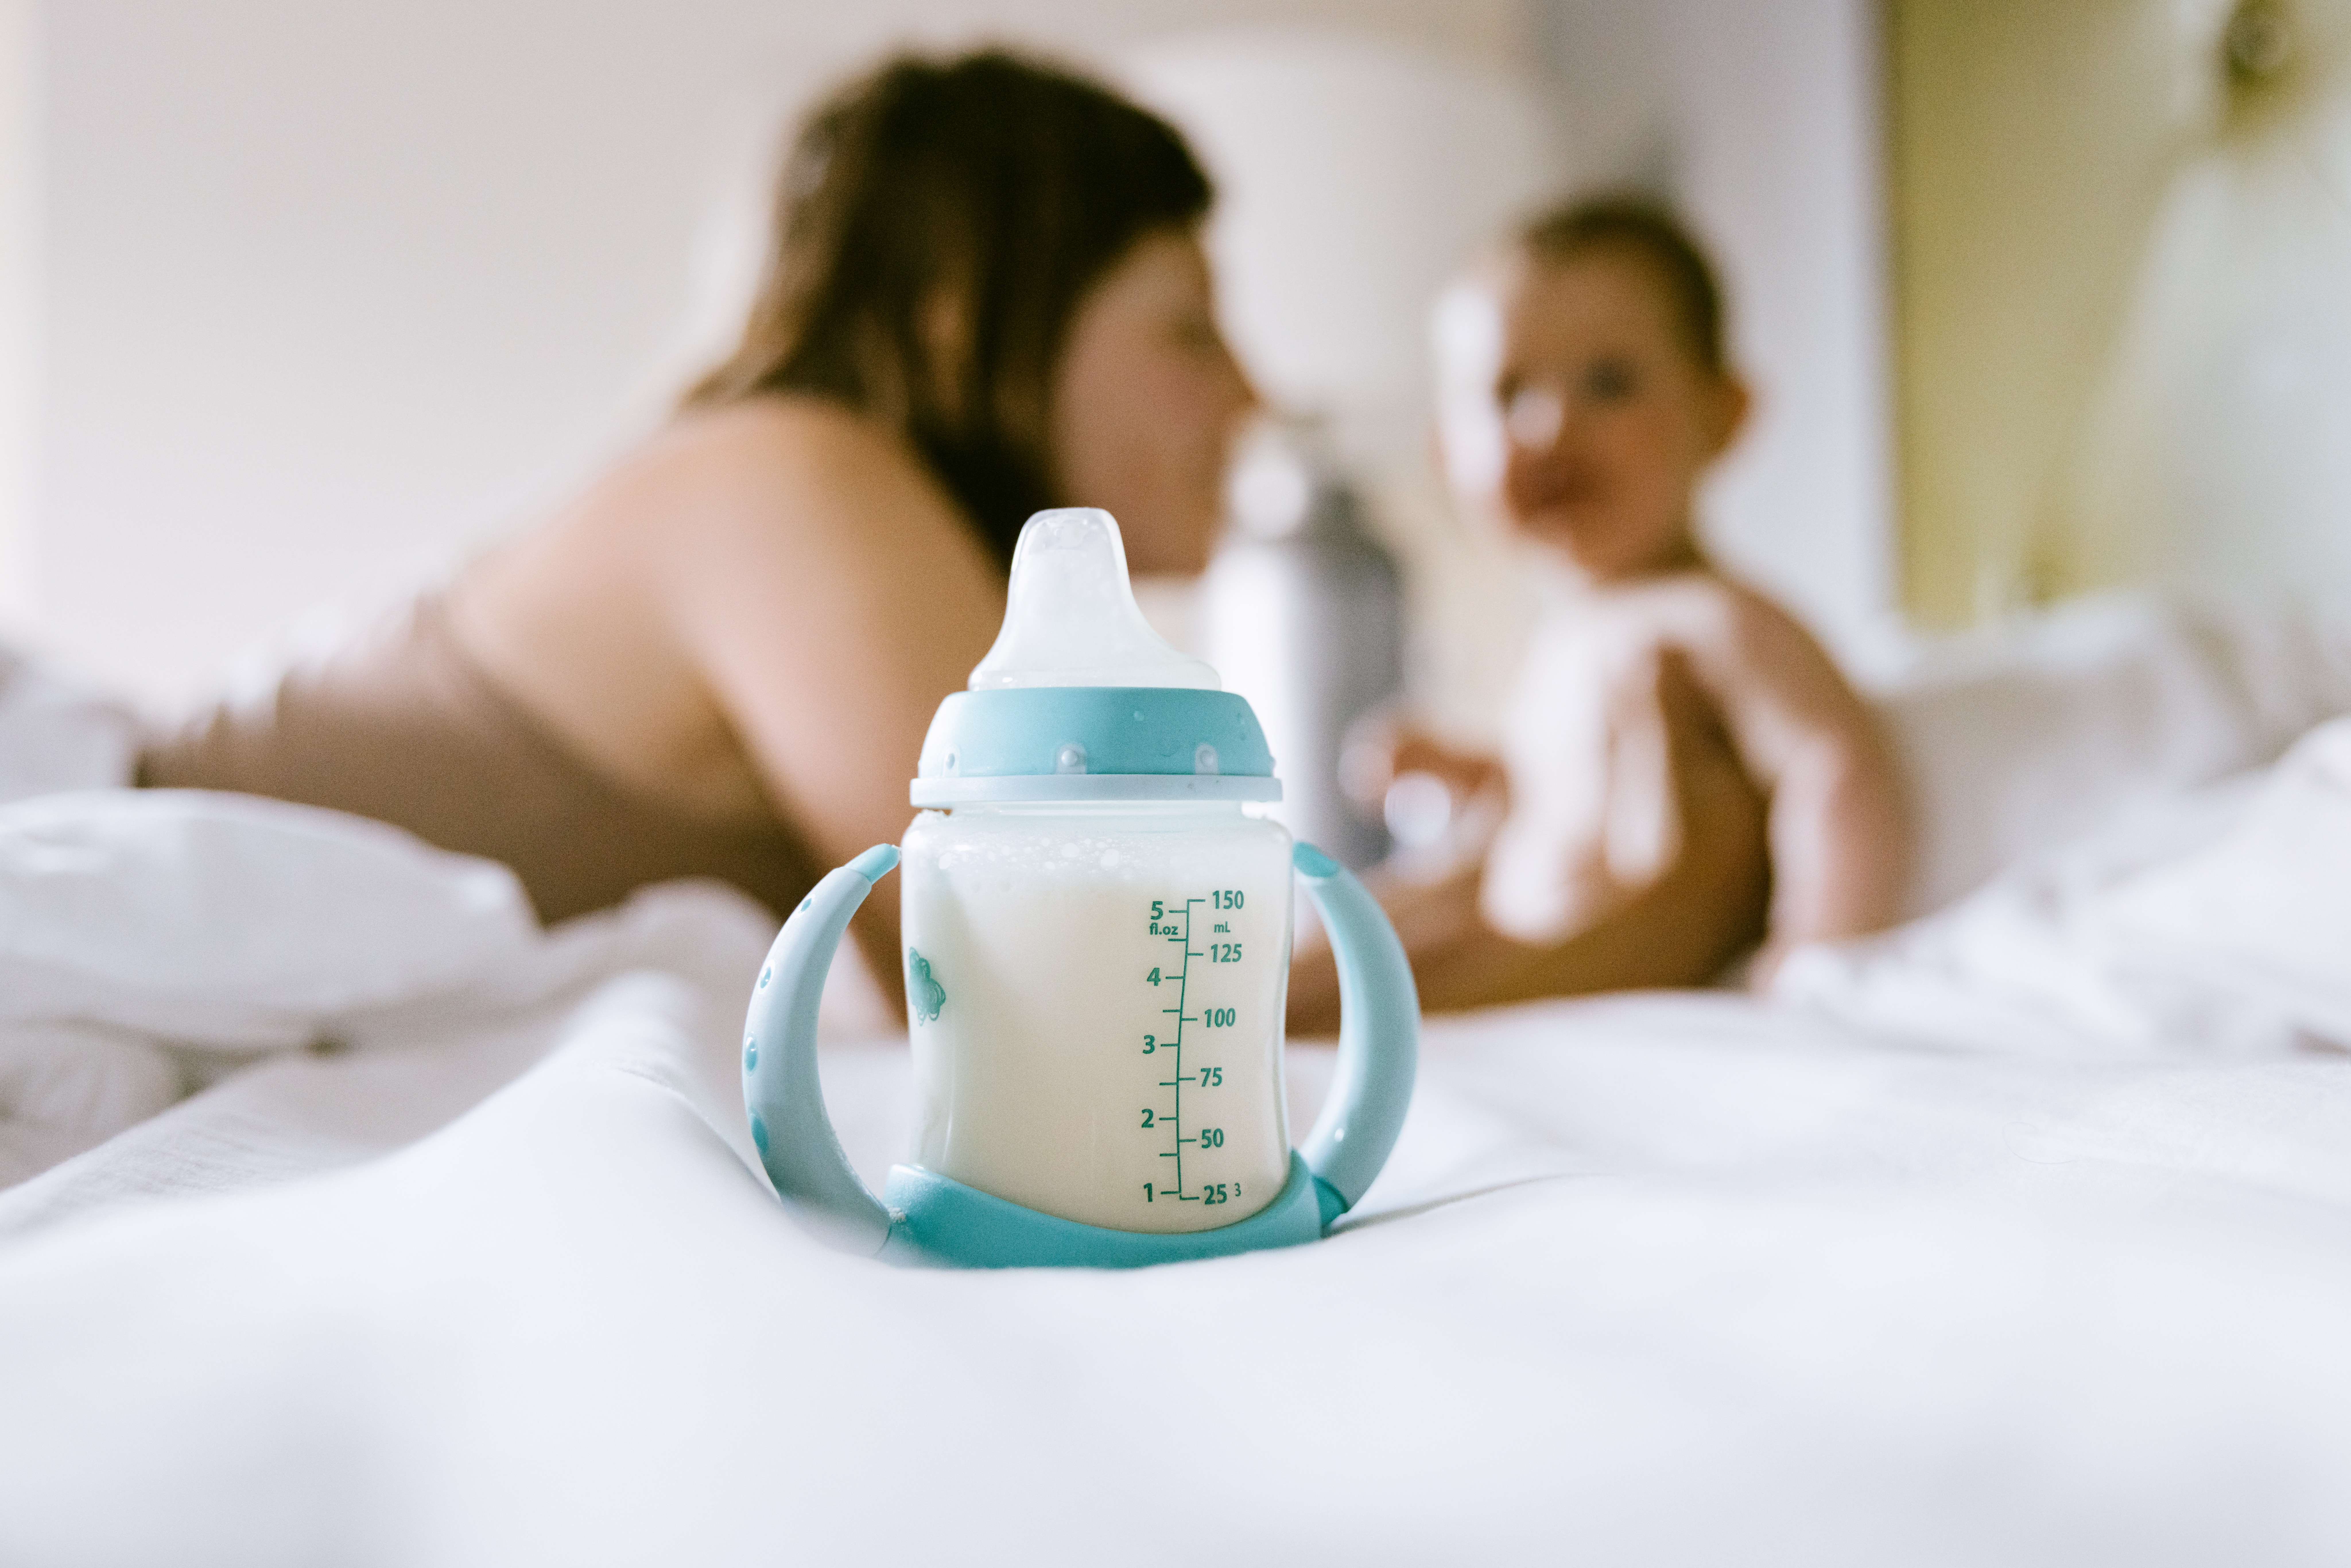 Sparen Sie Geld, indem Sie die Marke der Babynahrung wechseln, denn alle im Vereinigten Königreich verkaufte Milch muss den gleichen Nährwertstandards entsprechen